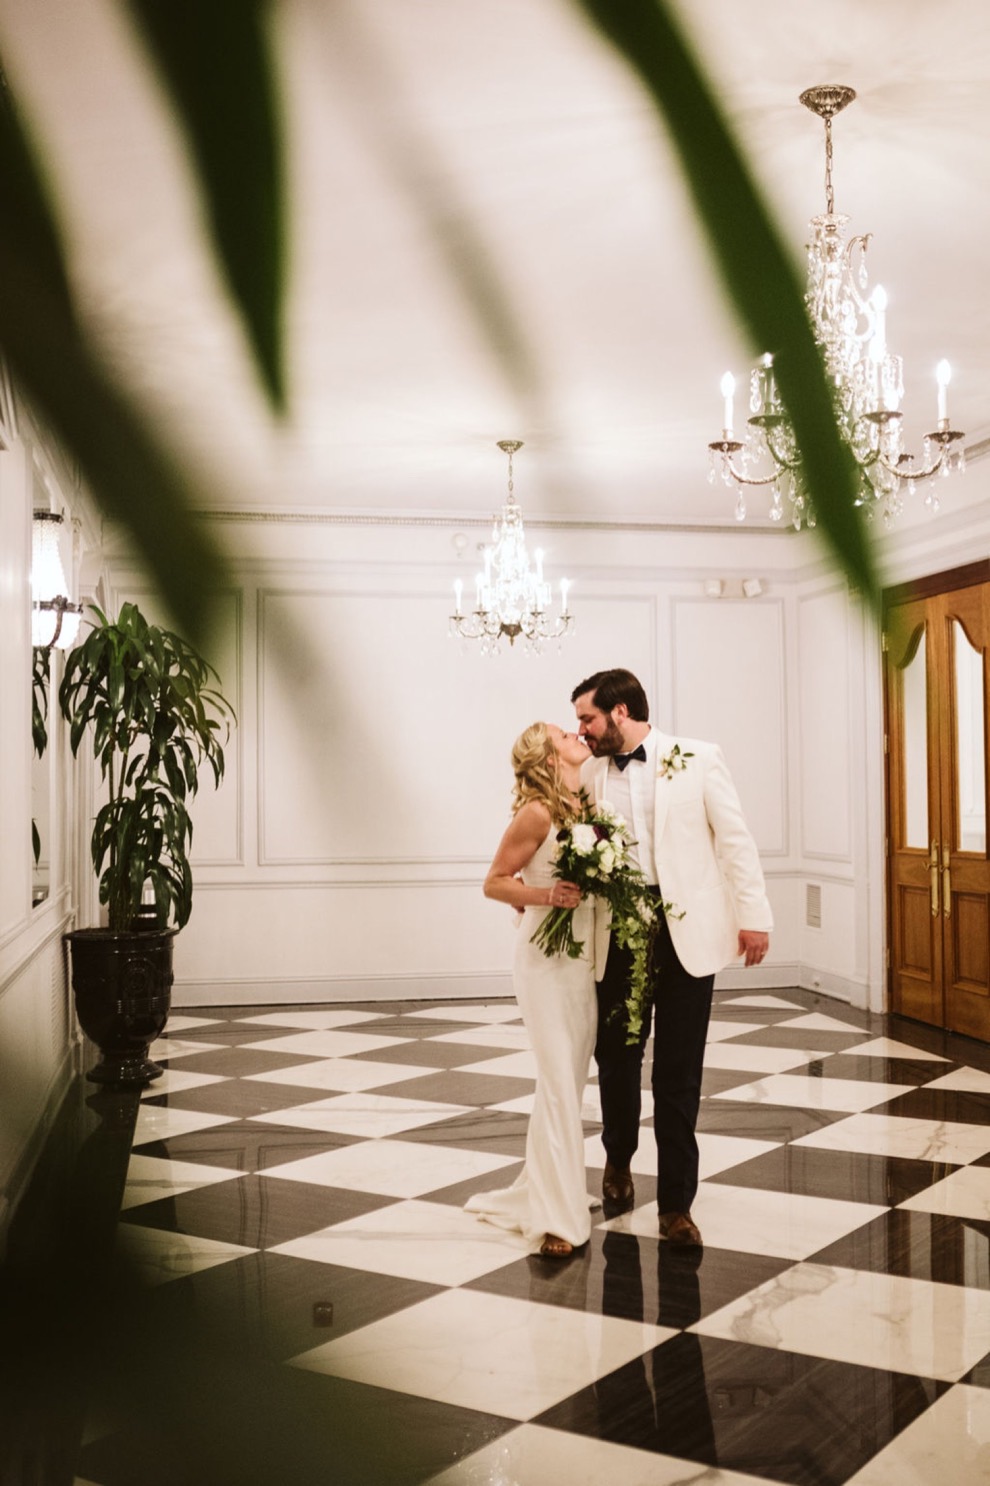 Bride and groom walking arm in arm down elegant hotel hallway